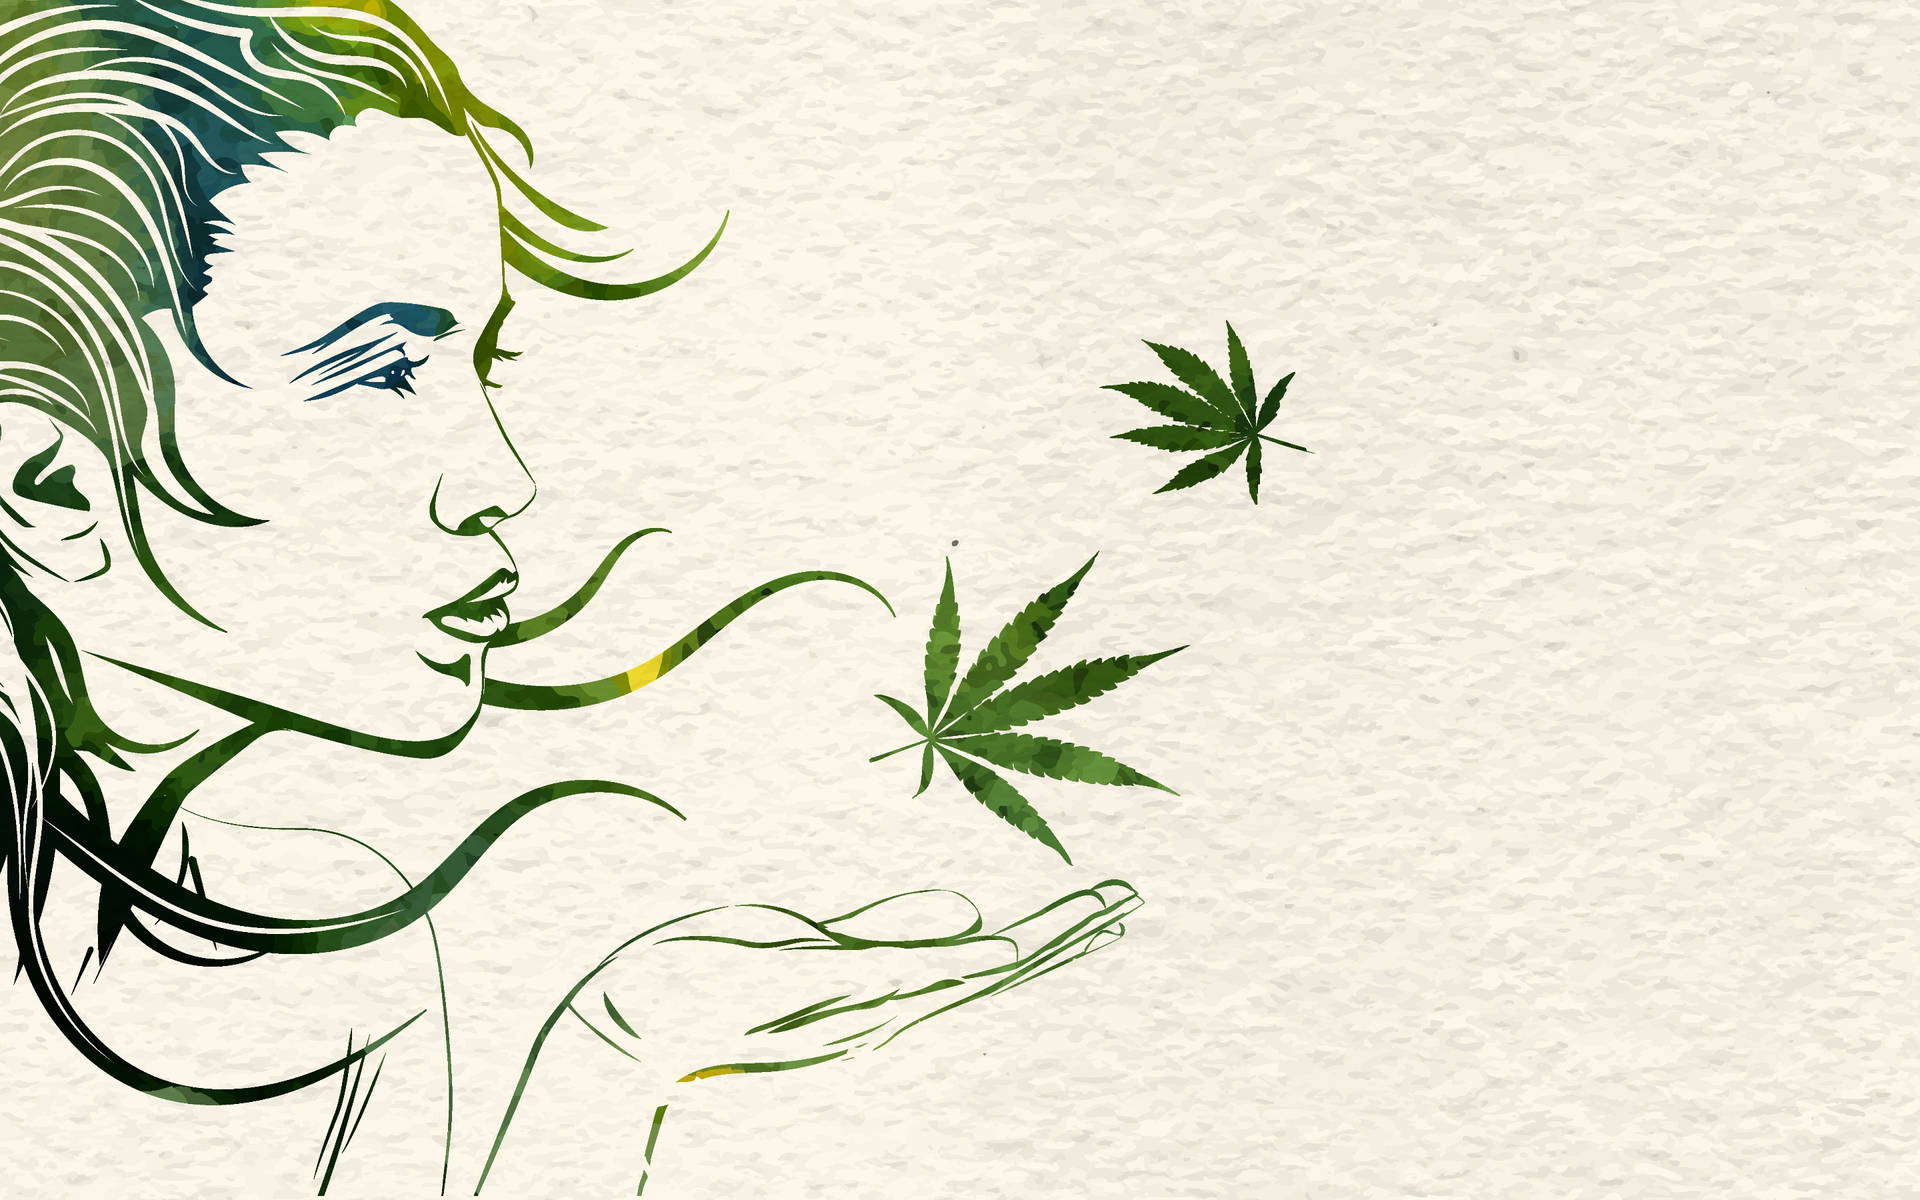 Digital Art Promo For Smoking Weed